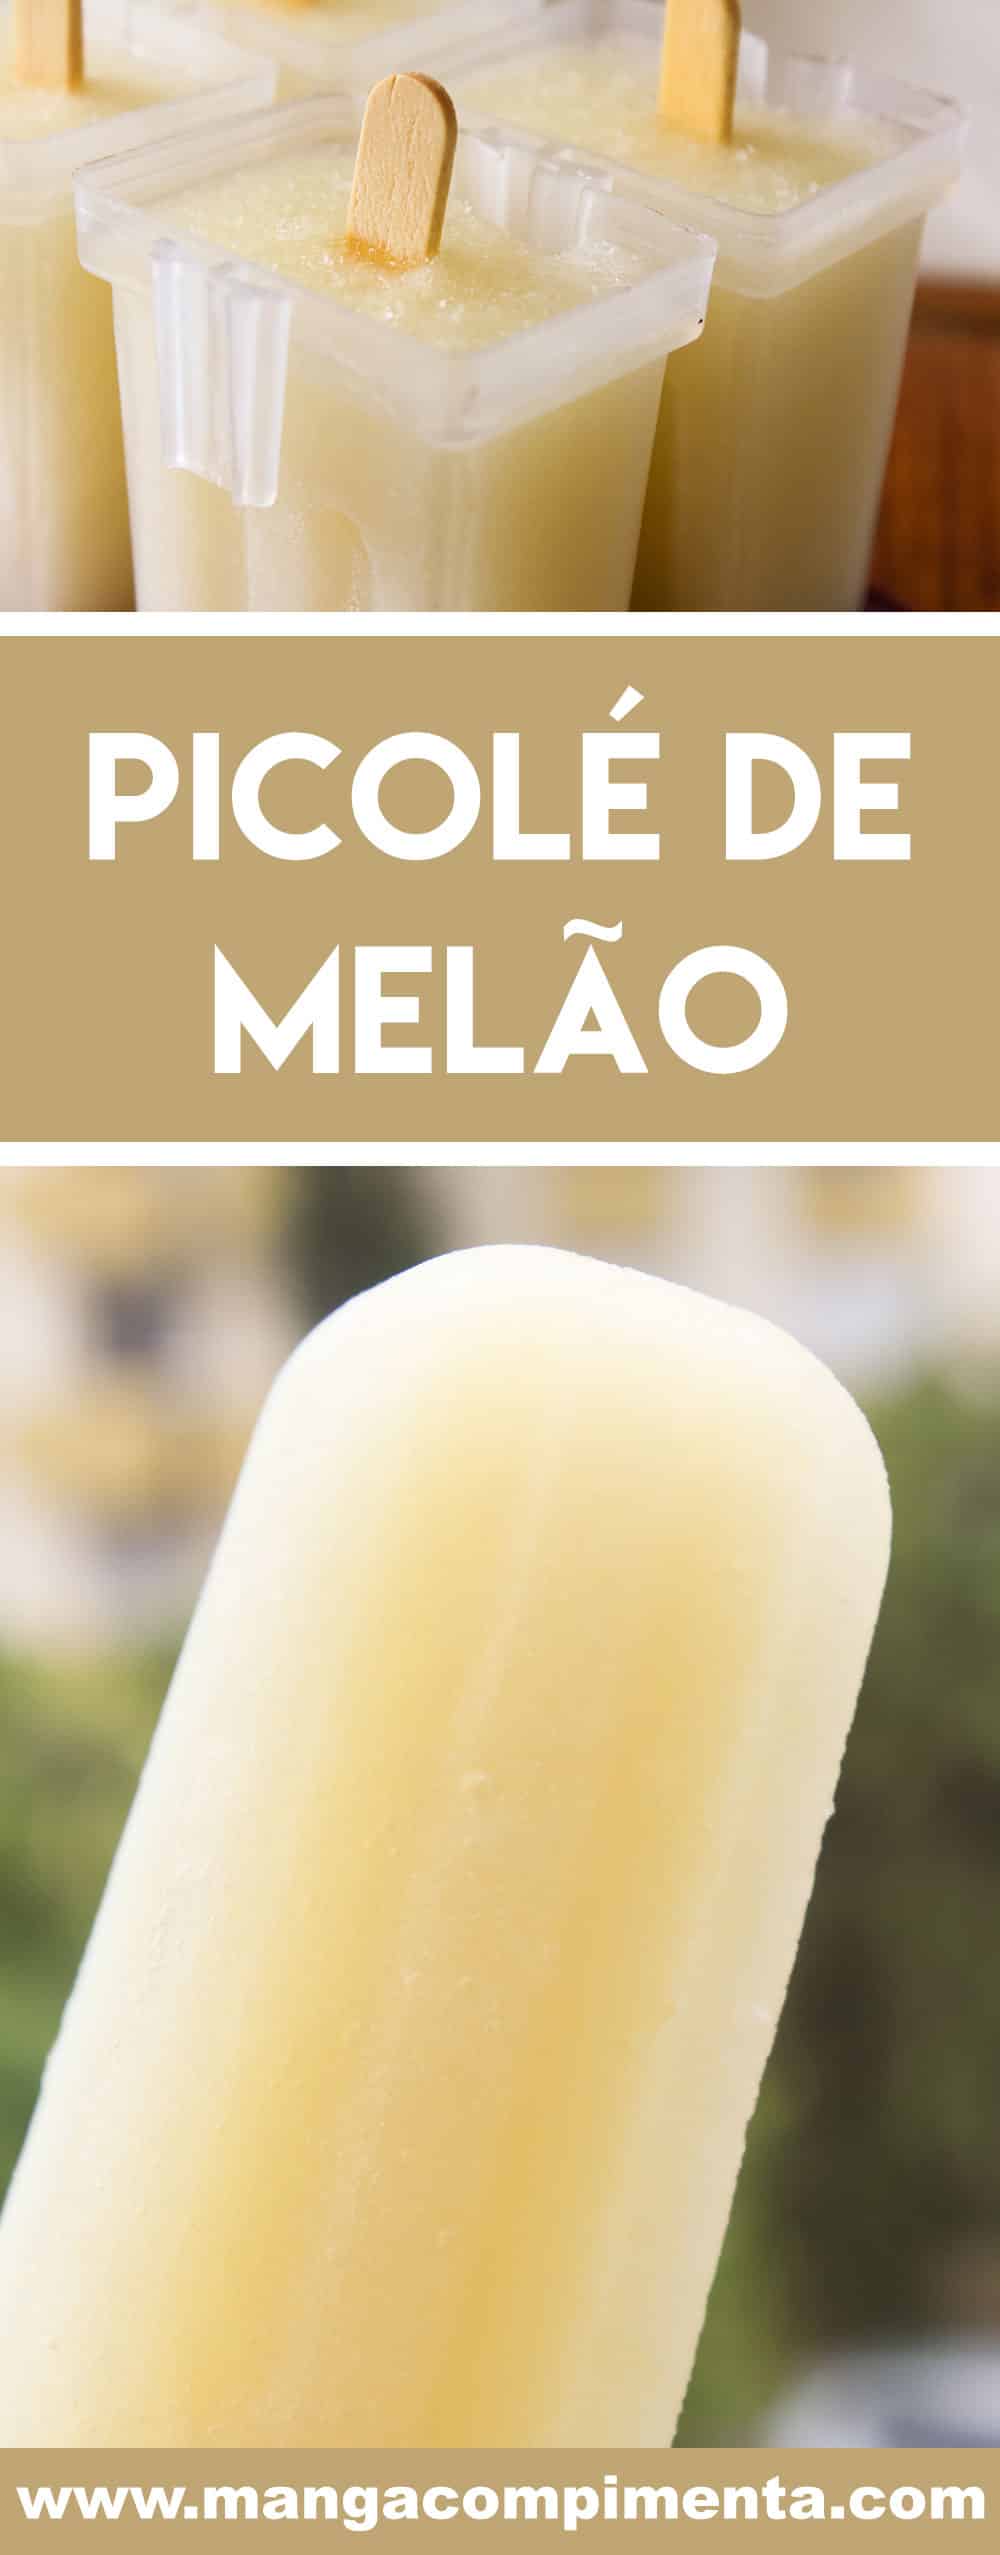 Receita de Picolé de Melão - prepare um sorvete caseiro e saudável neste verão.